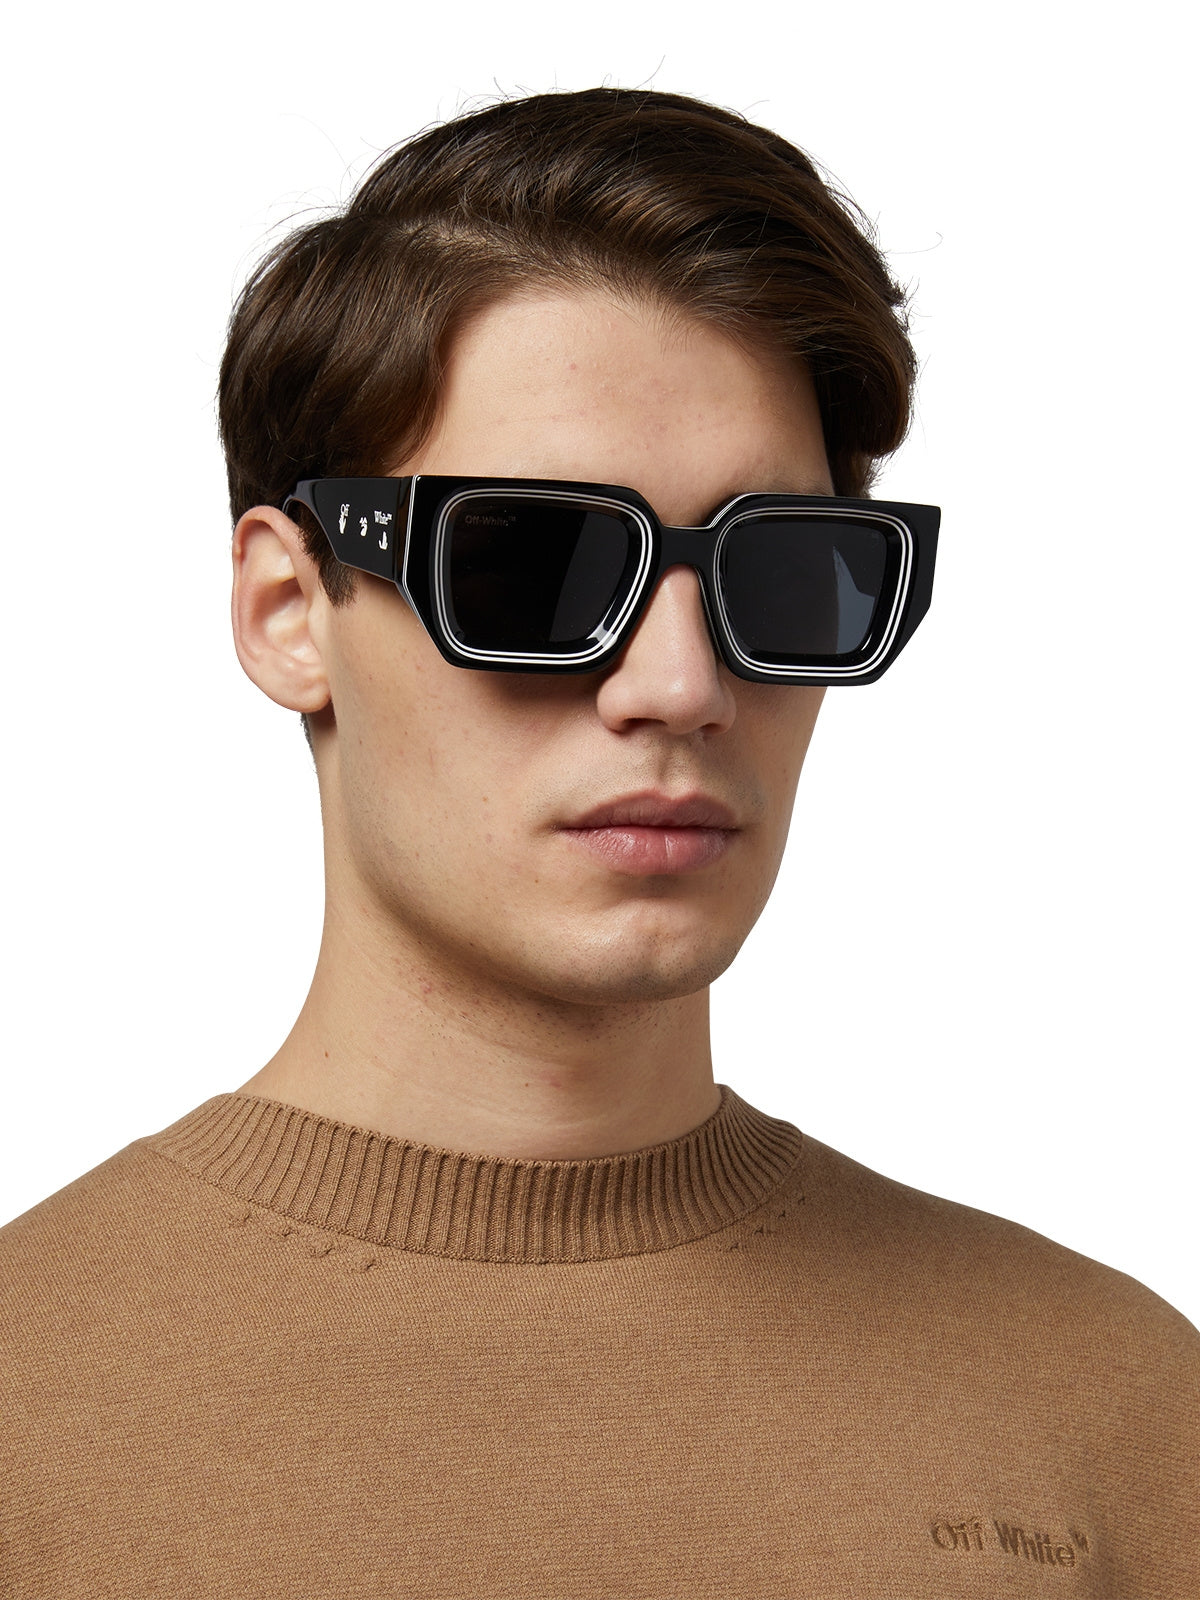 Off-White Francisco OERI048 Square Sunglasses | Fashion Eyewear US